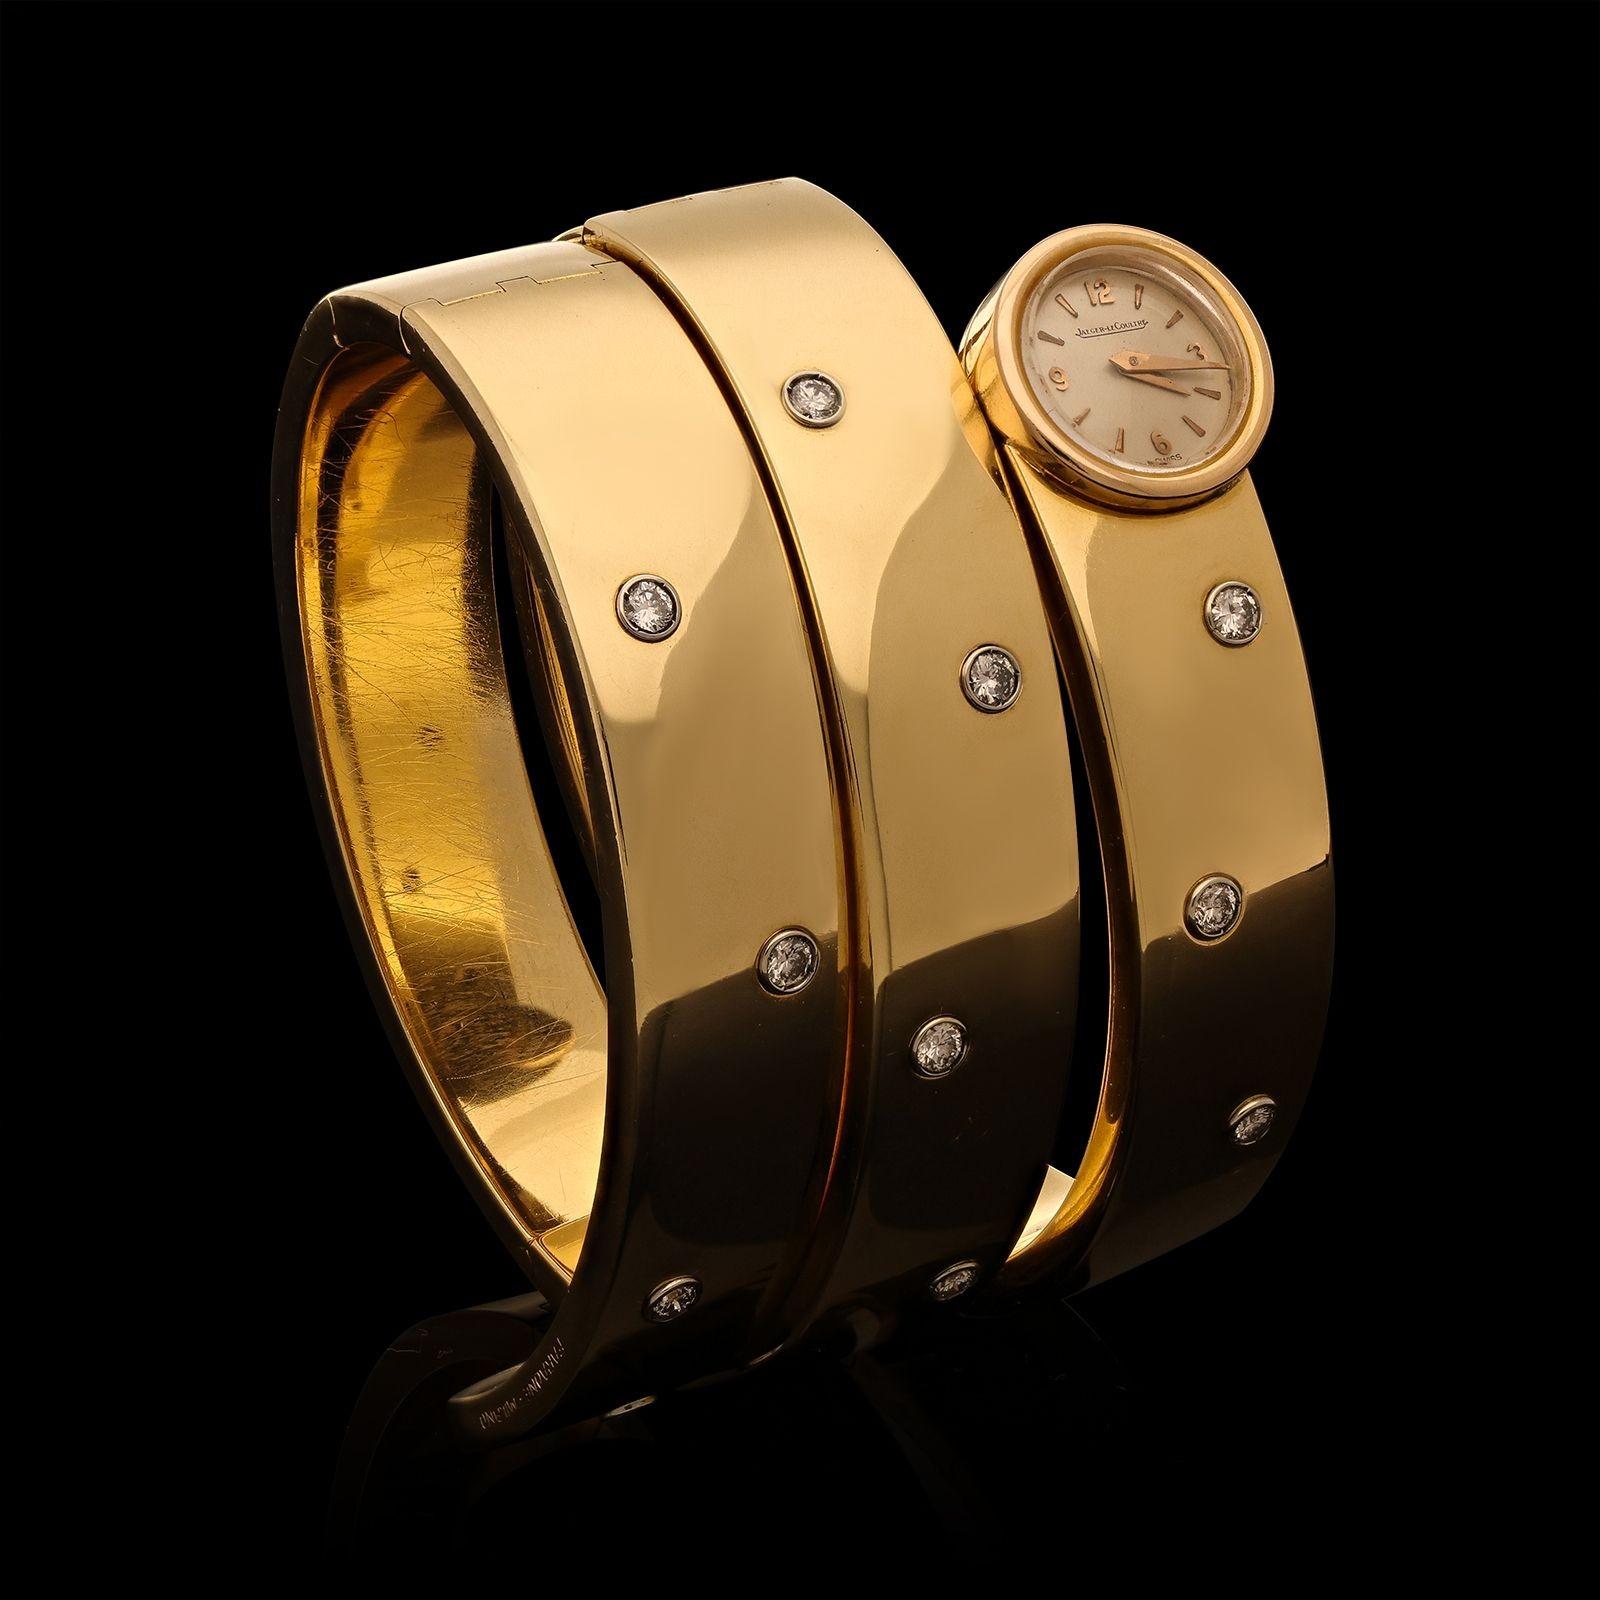 Ein Vintage Gold und Diamant Wraparound Uhr von Faraone und Jaeger-LeCoultre c.1980s, die Uhr wickelt sich um das Handgelenk dreimal und ist geschickt an mehreren Stellen gefedert, so dass es einfach zu setzen und abnehmen, ist die Vorderseite mit